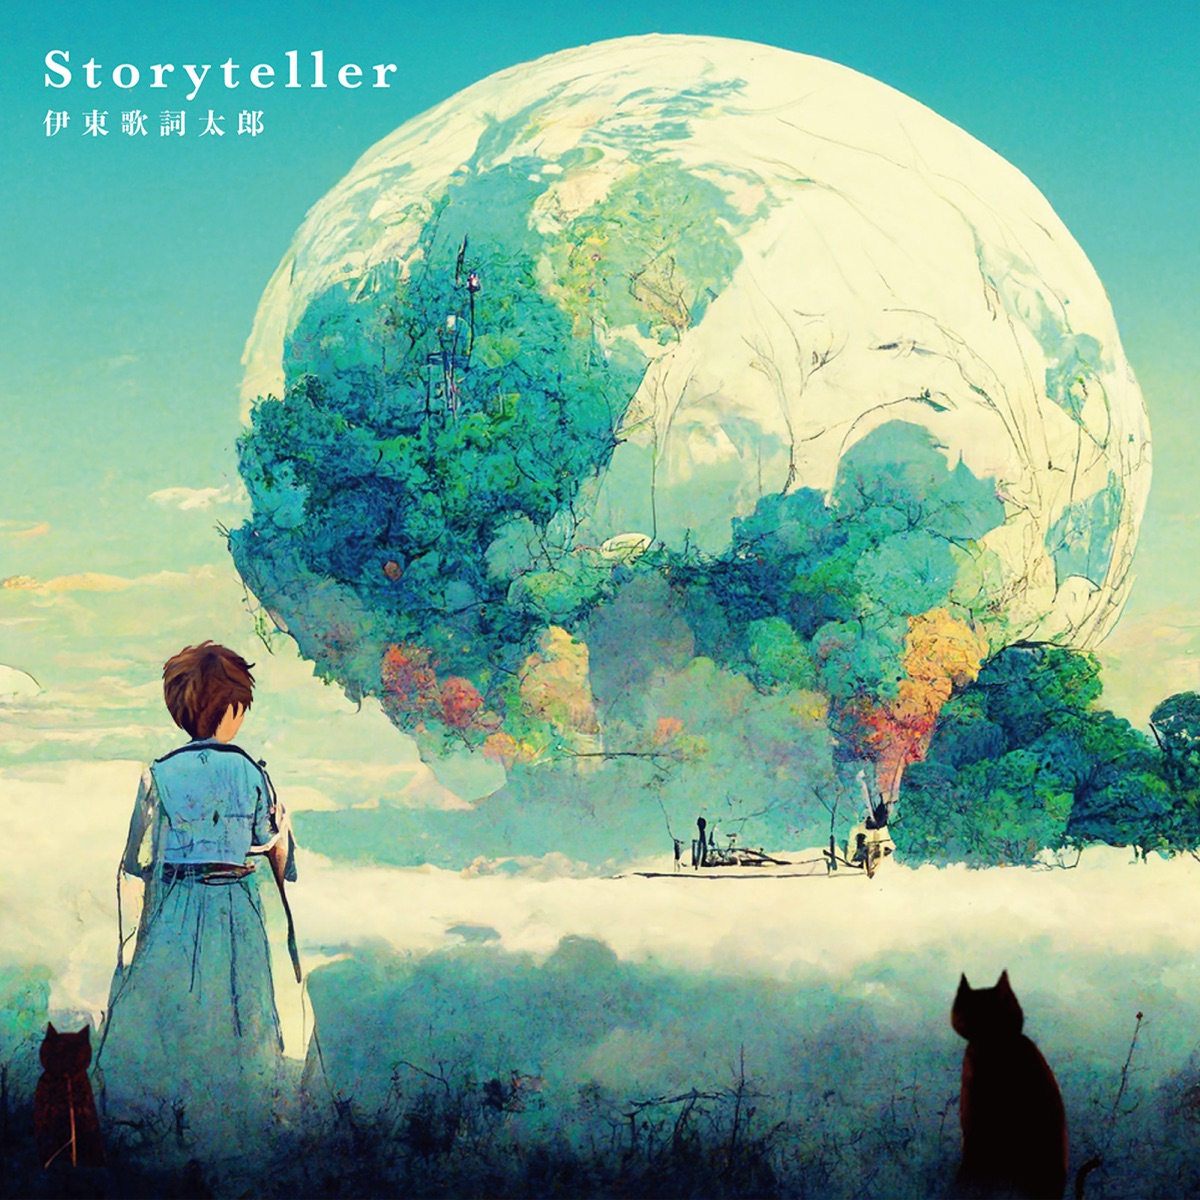 Cover art for『Kashitaro Ito - Storyteller』from the release『Storyteller